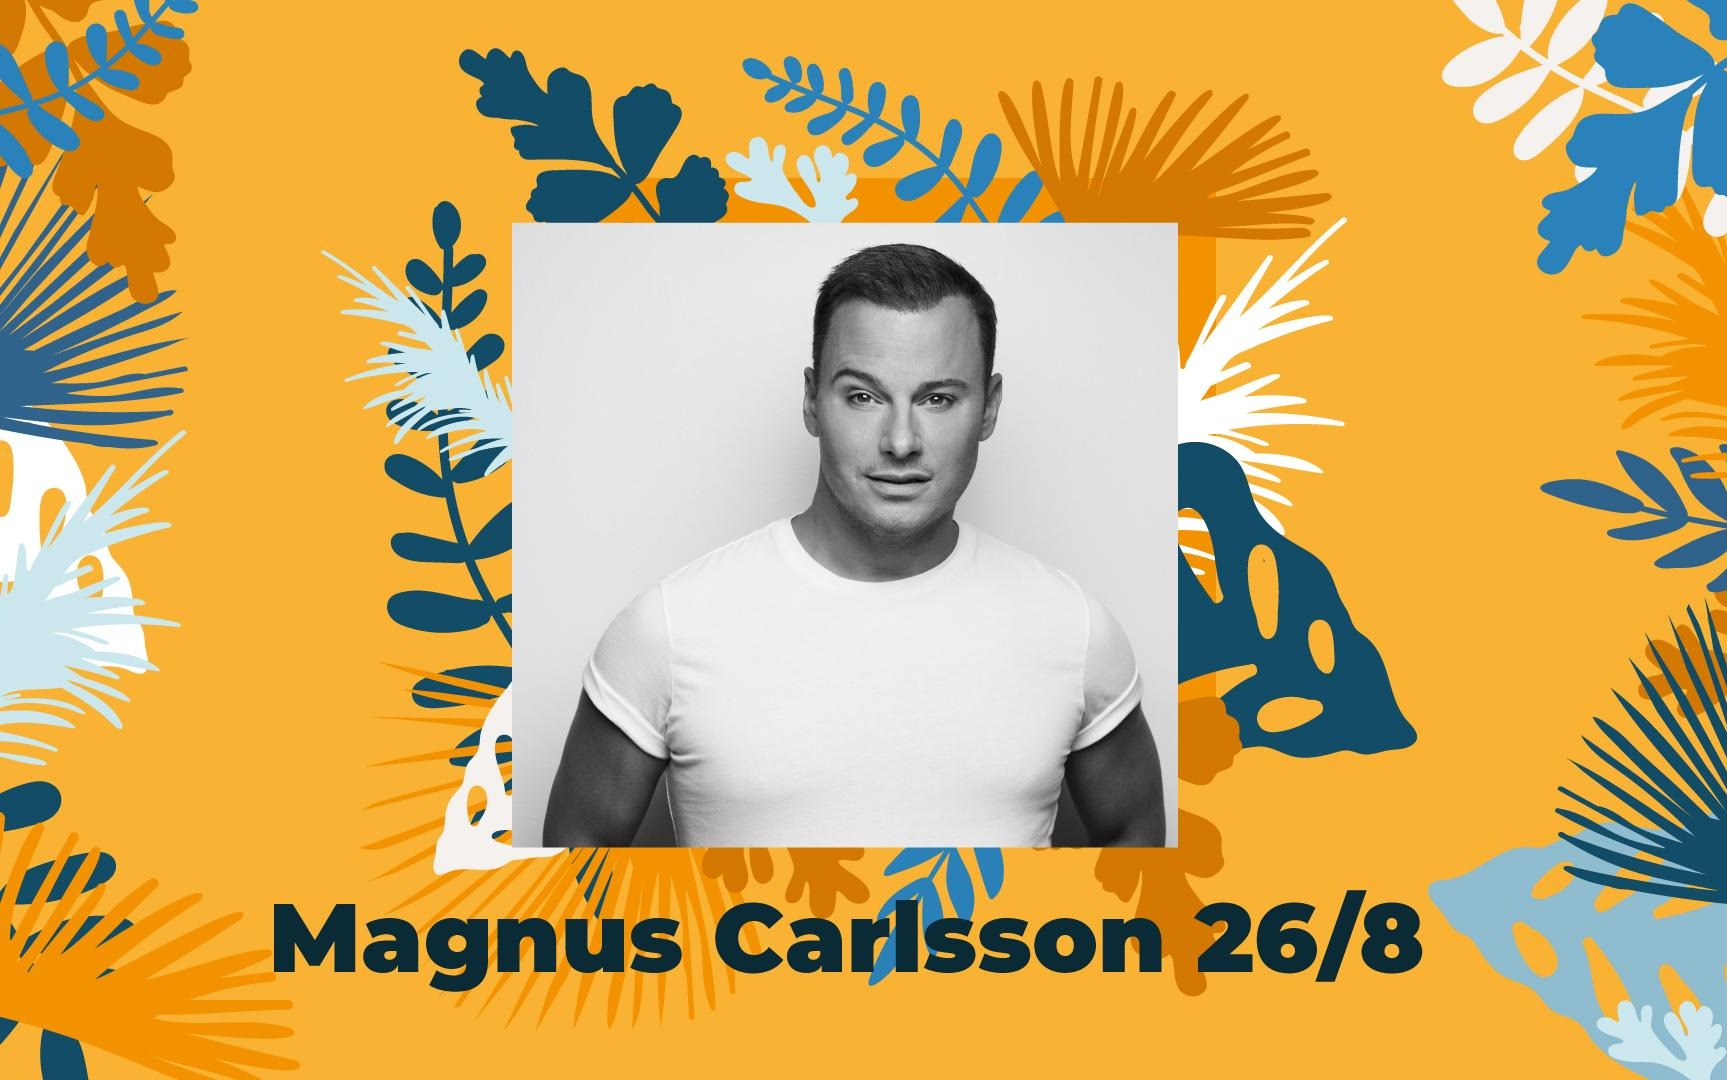 svartvit bild på Magnus Carlsson mot orange bakgrund.